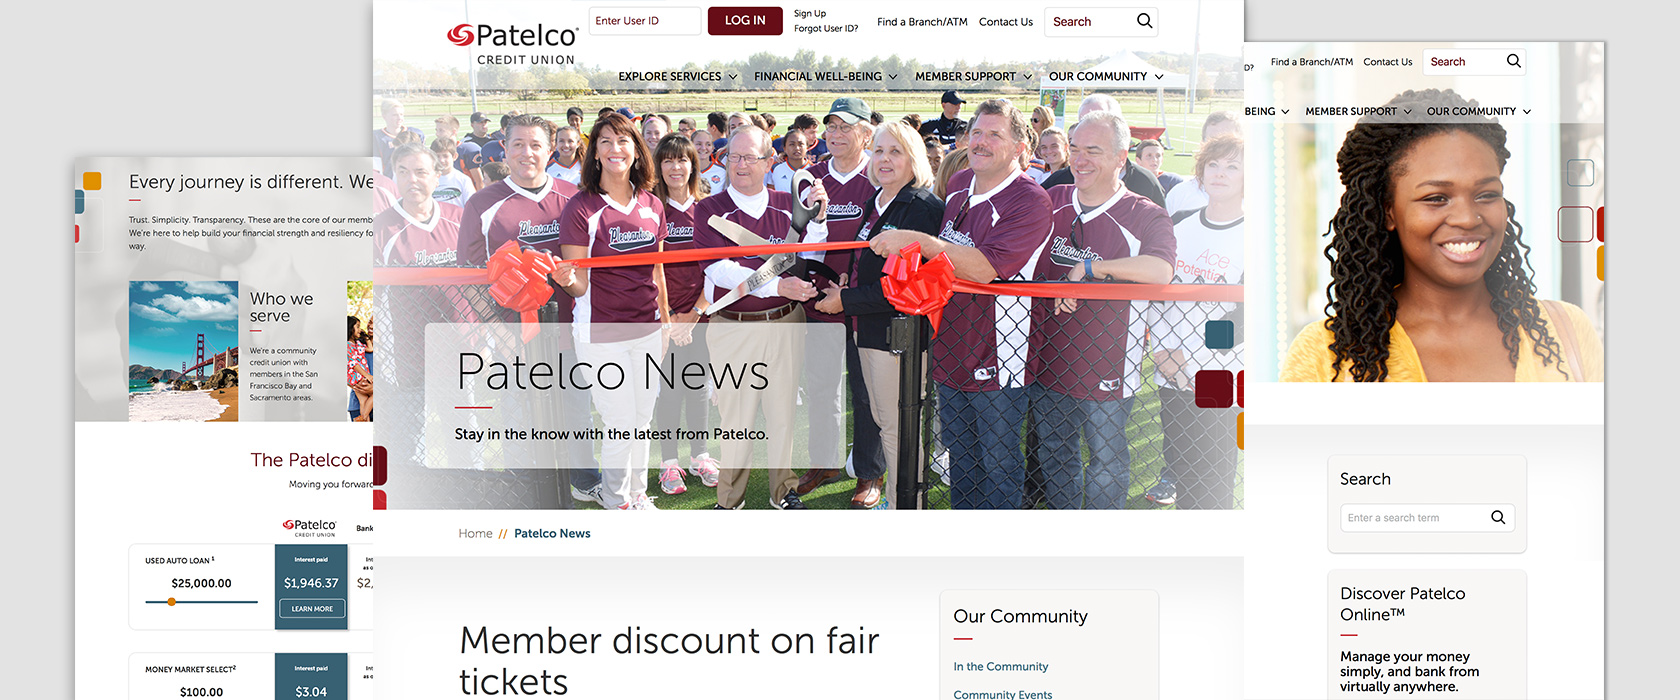 Patelco Website